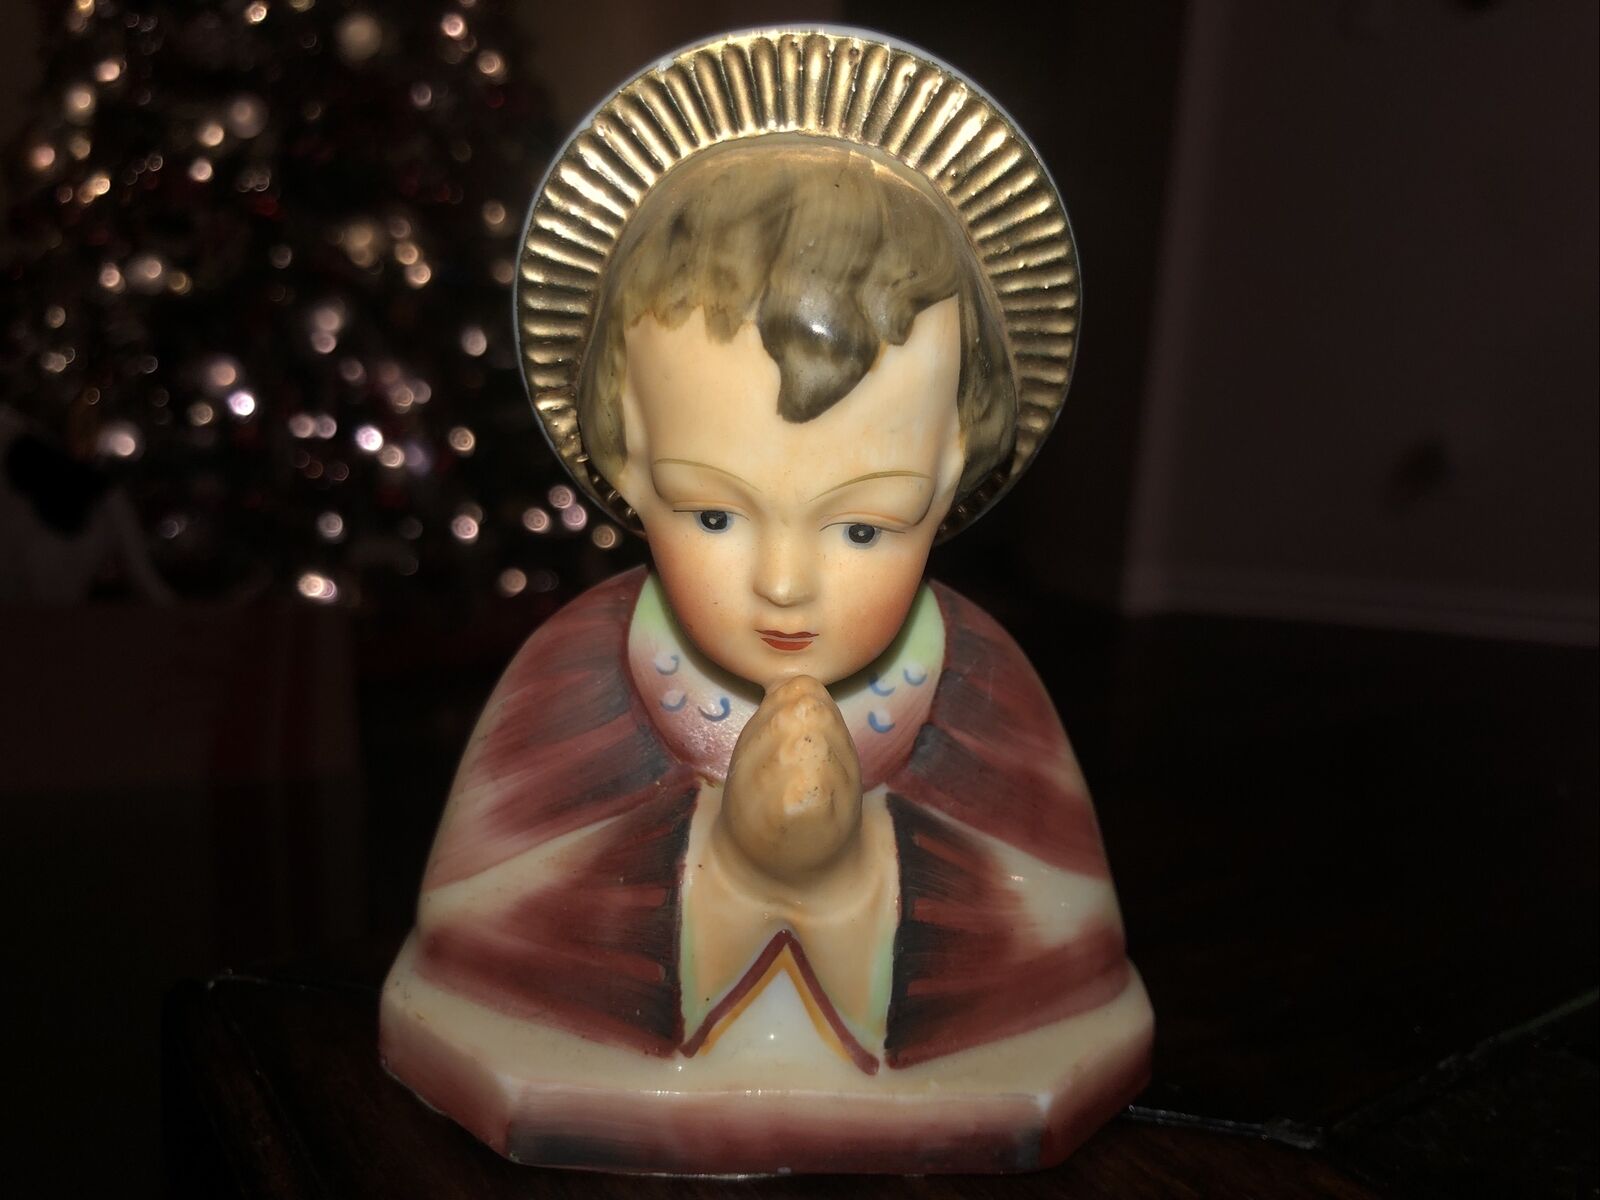 Antique San Myro Religious Porcelain Figurine Praying Saint W/ Gilt Halo 4